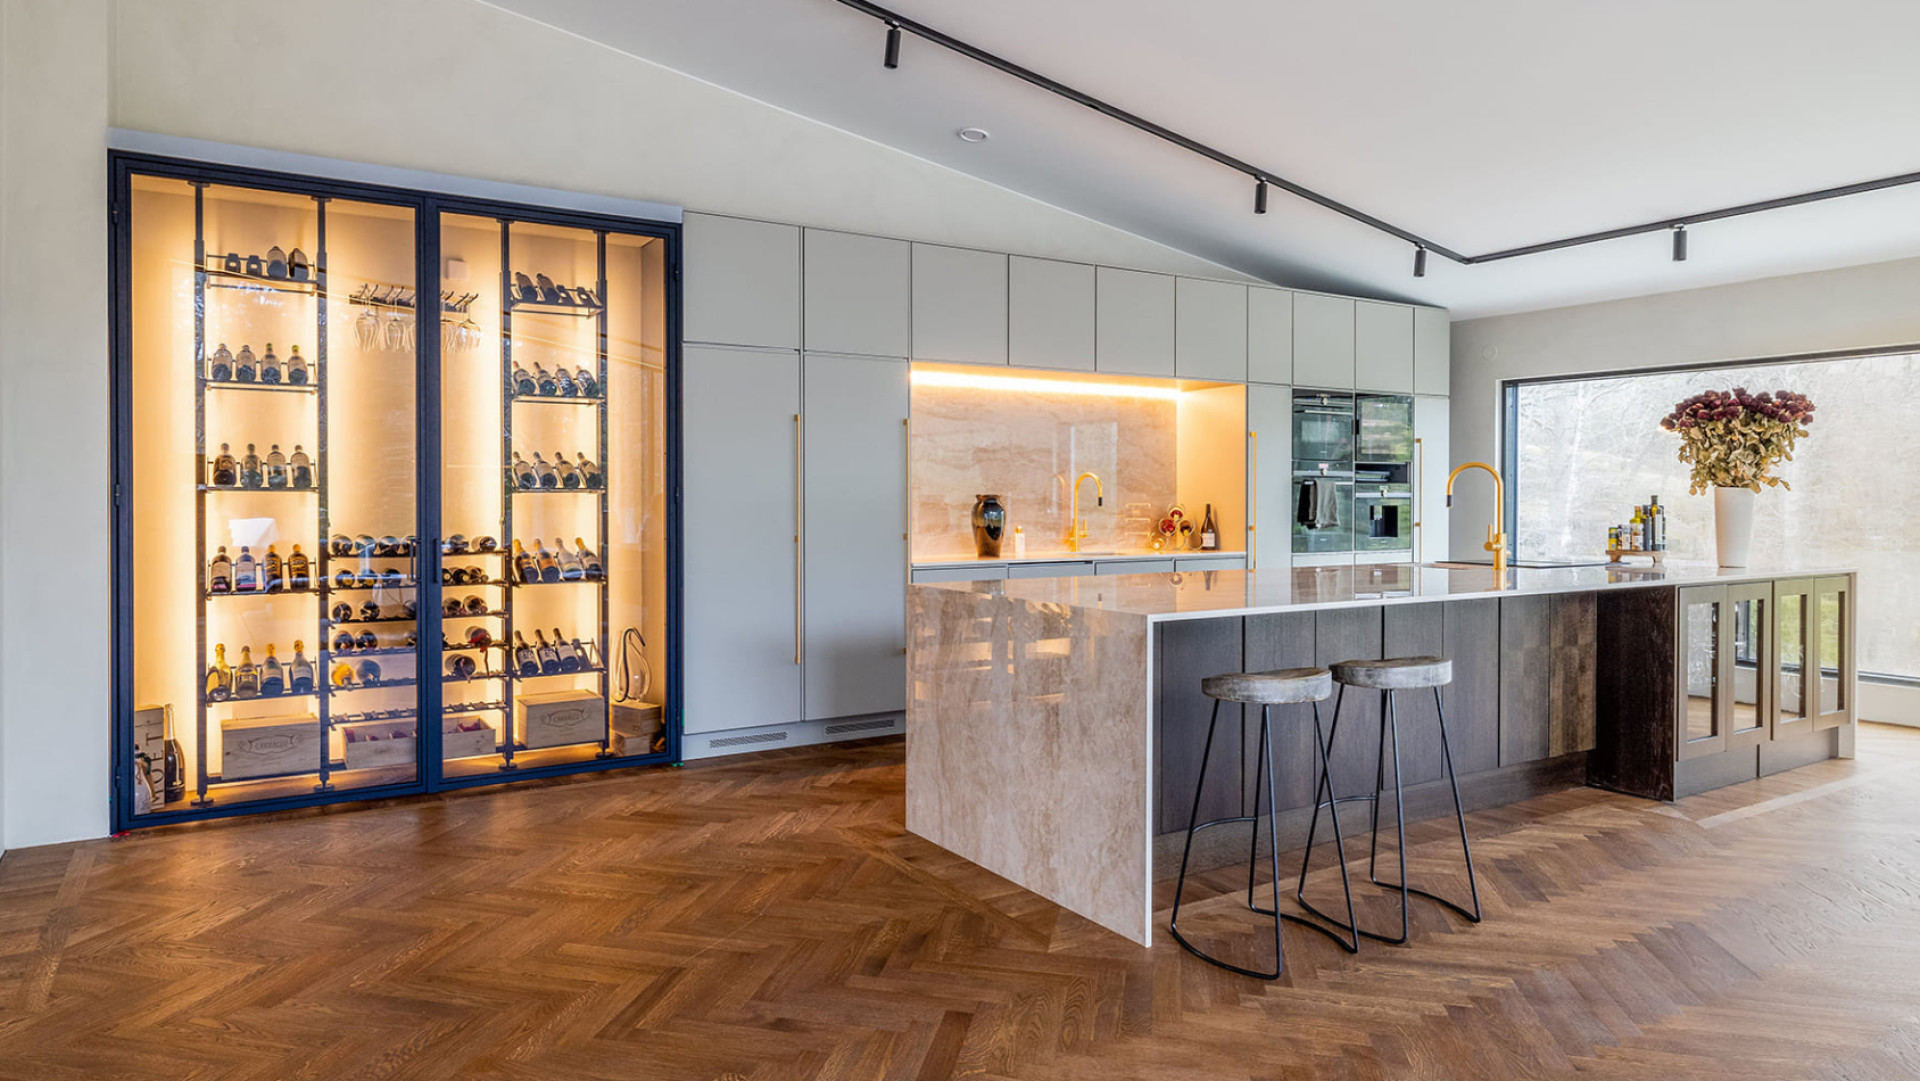 Caves à vin de rêve - Exemple de création d'une vitrine à vin encastrée dans le mur d'un intérieur contemporain et luxueux avec un ilot de cuisine en marbre.